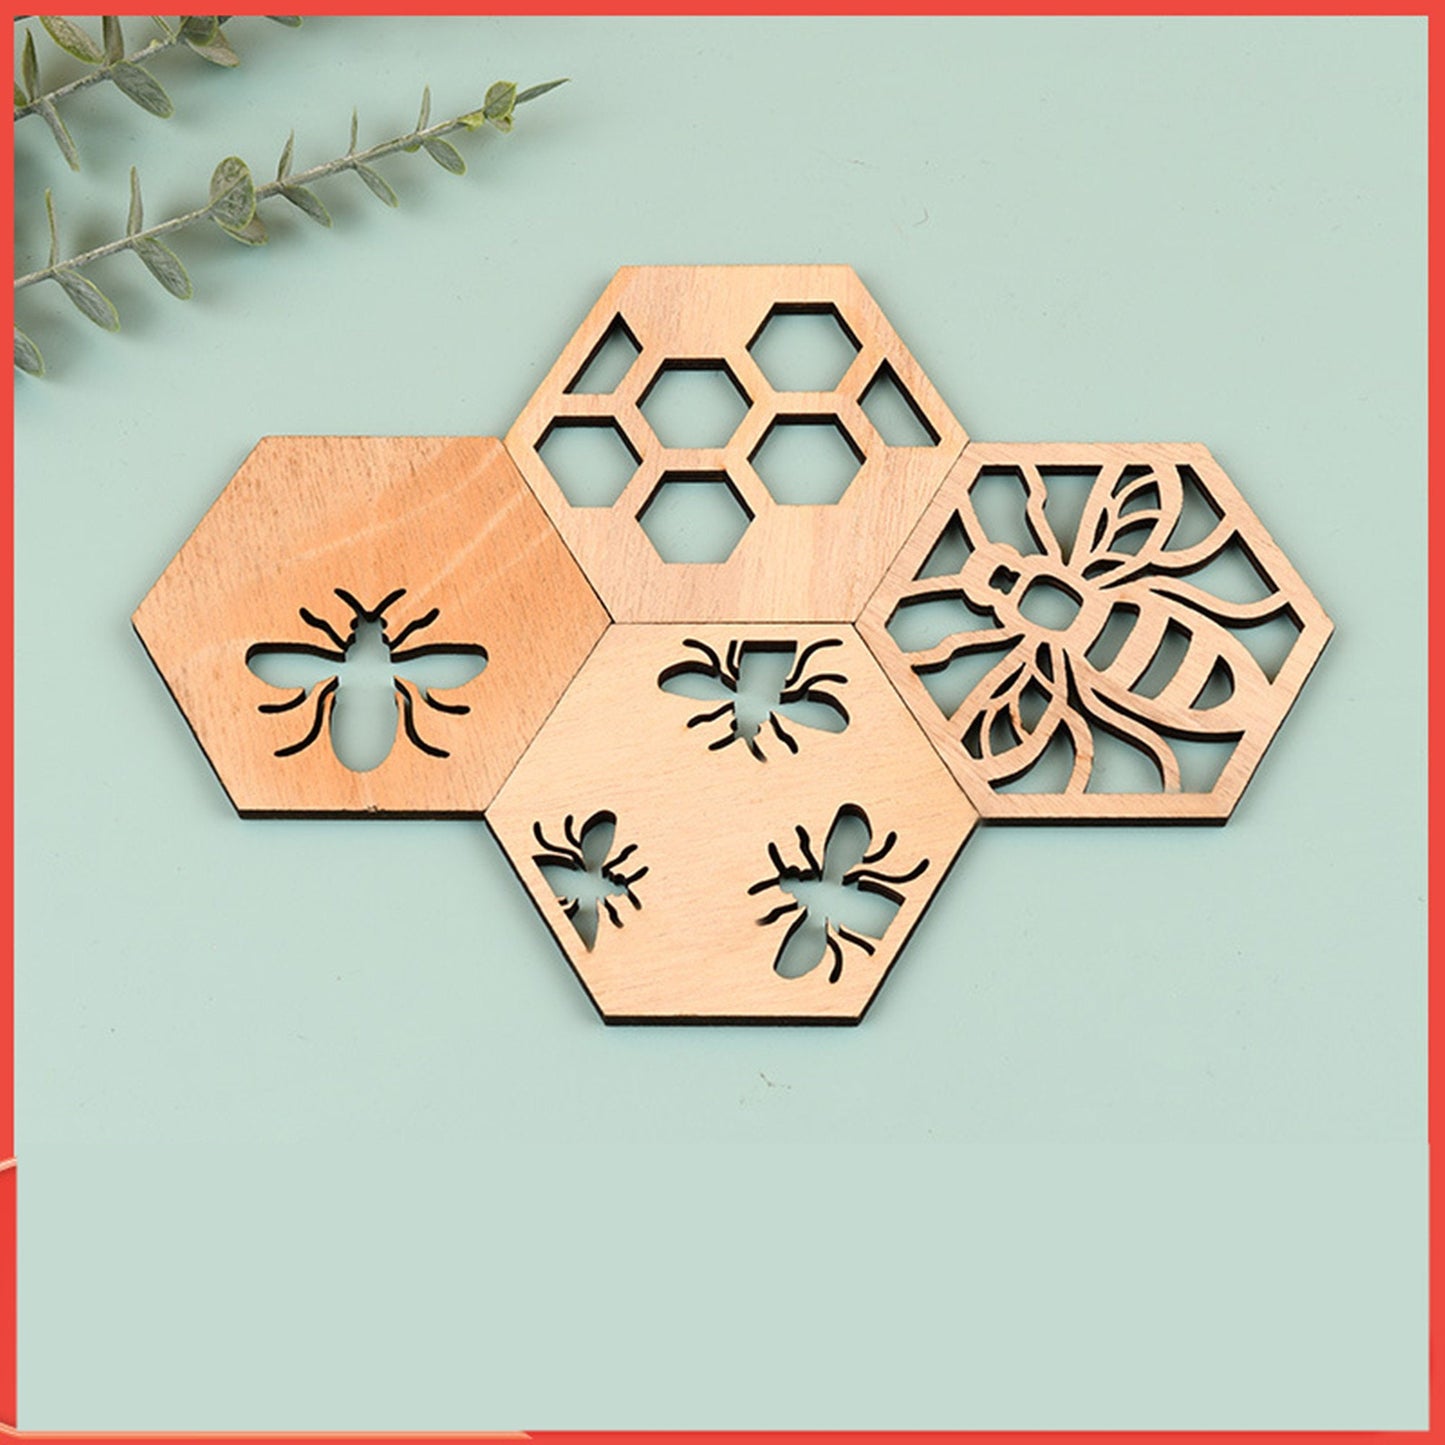 Handmade Wood Honeycomb Bee Coasters - Wood Coasters - Set of 4 Coasters & Holder - Wood Bee Decor - Bee Kitchen - Beekeeper Gift